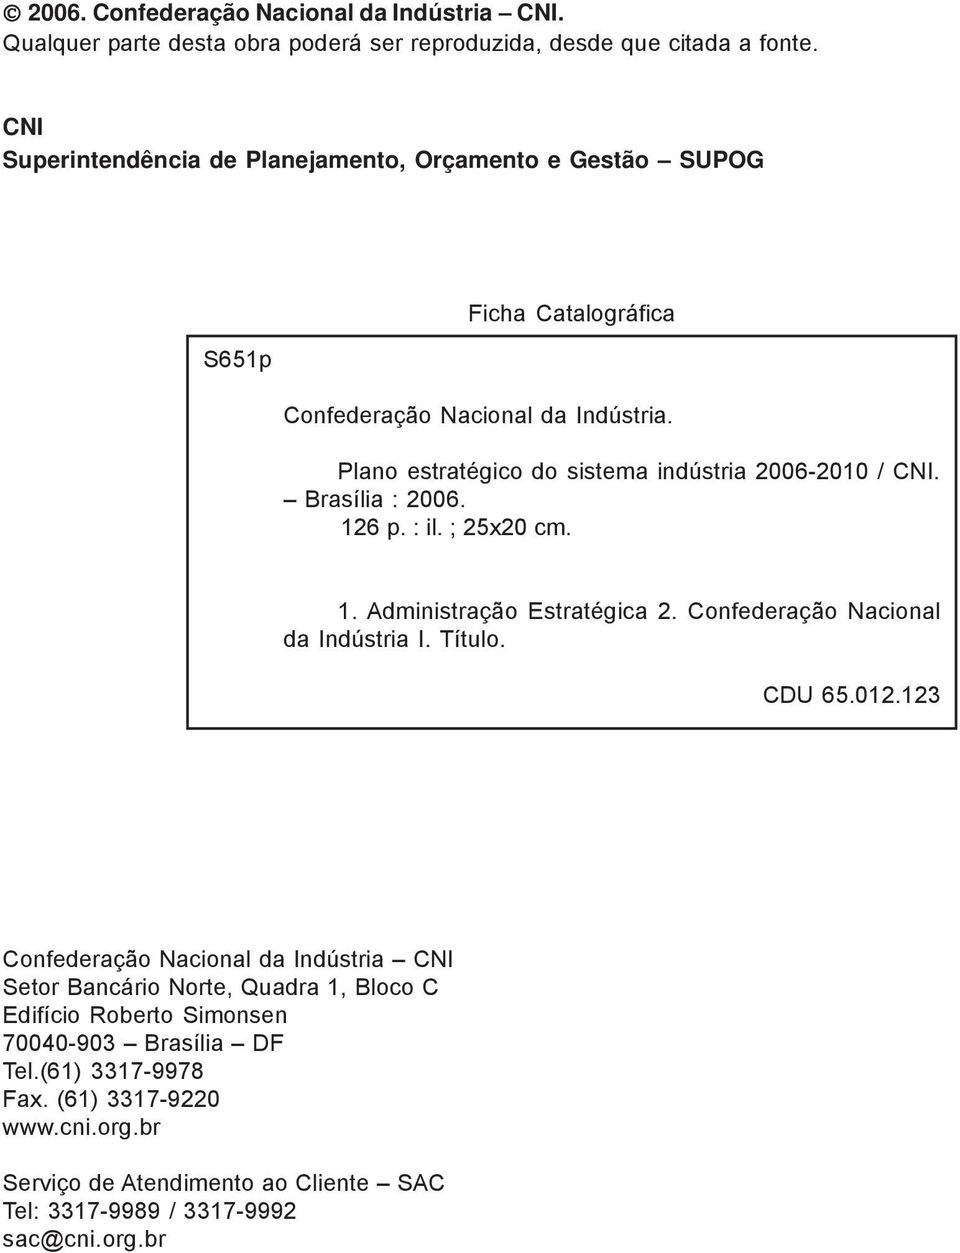 Plano estratégico do sistema indústria 2006-2010 / CNI. Brasília : 2006. 126 p. : il. ; 25x20 cm. 1. Administração Estratégica 2. Confederação Nacional da Indústria I. Título.